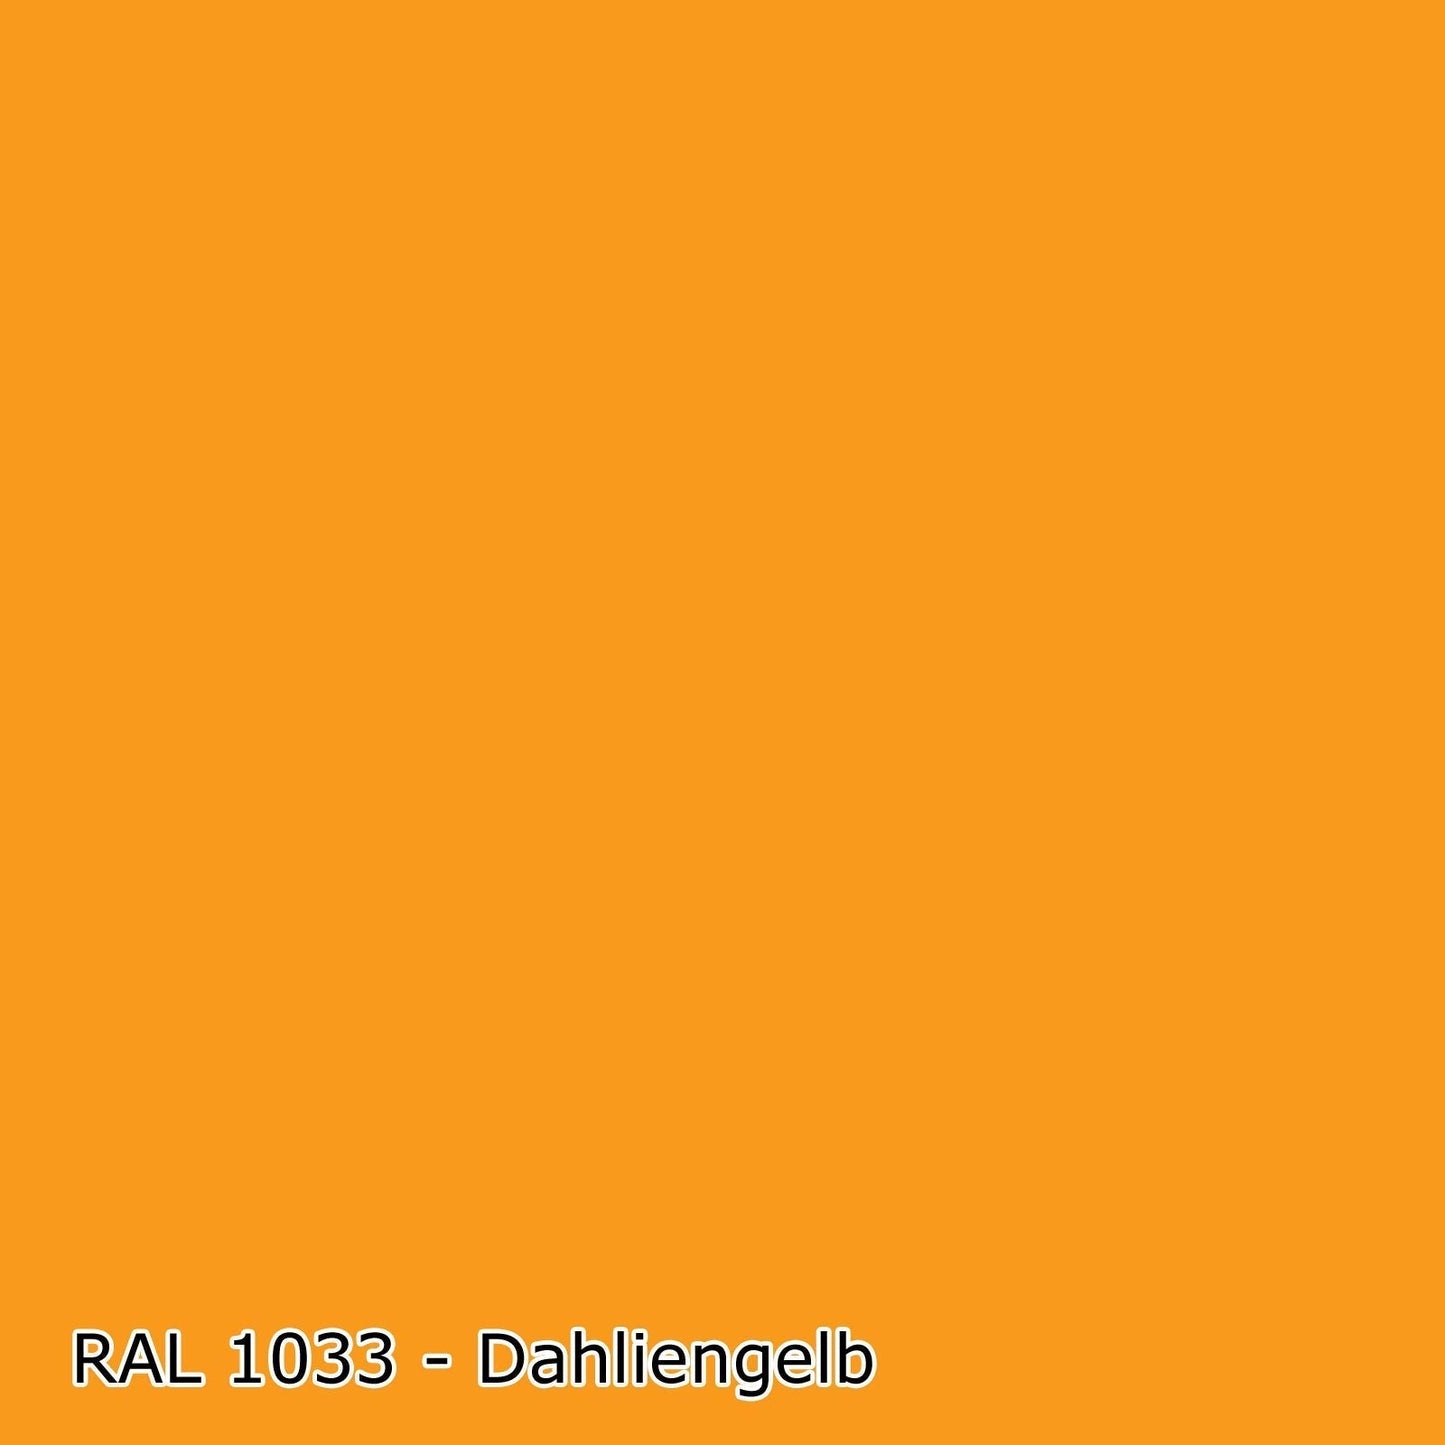 2,5 L Holzlack, RAL Farbwahl - SEIDENMATT (RAL 1000 - 6007)